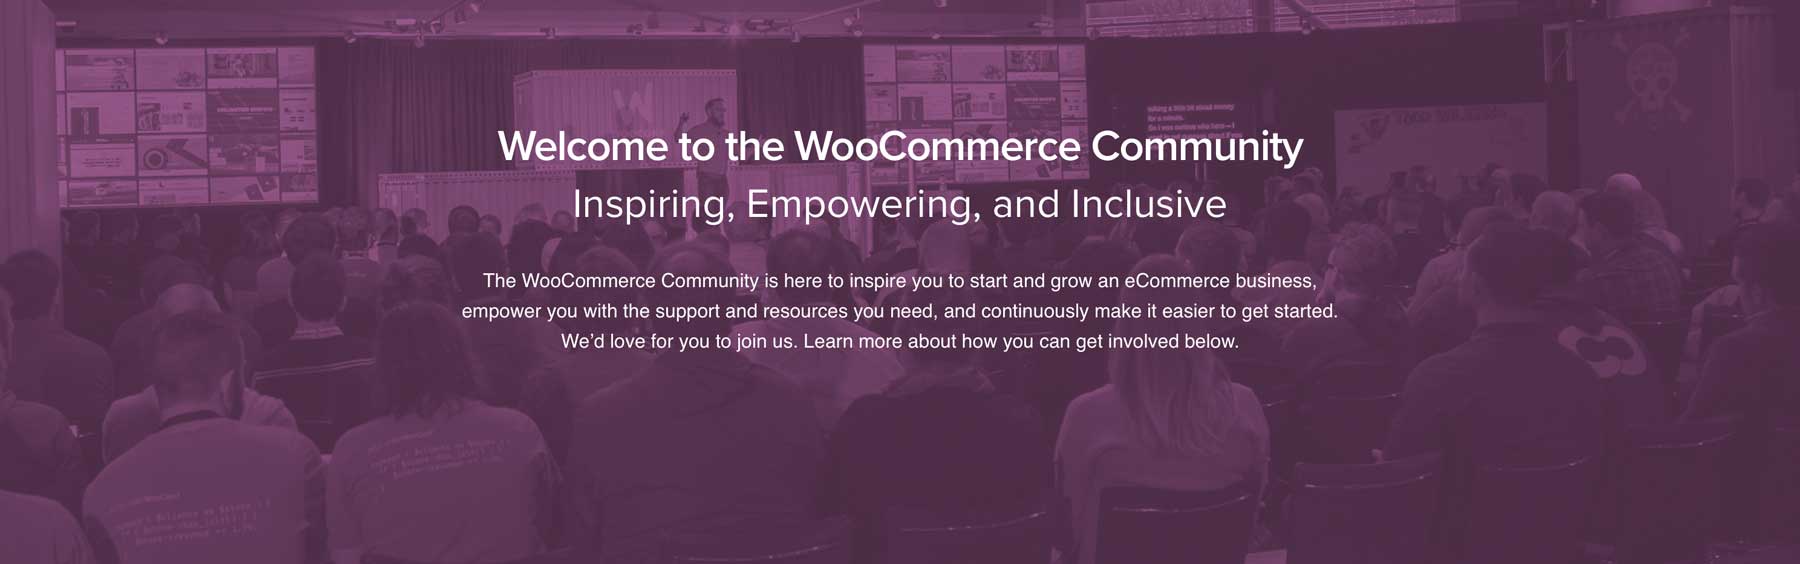 WooCommerce community